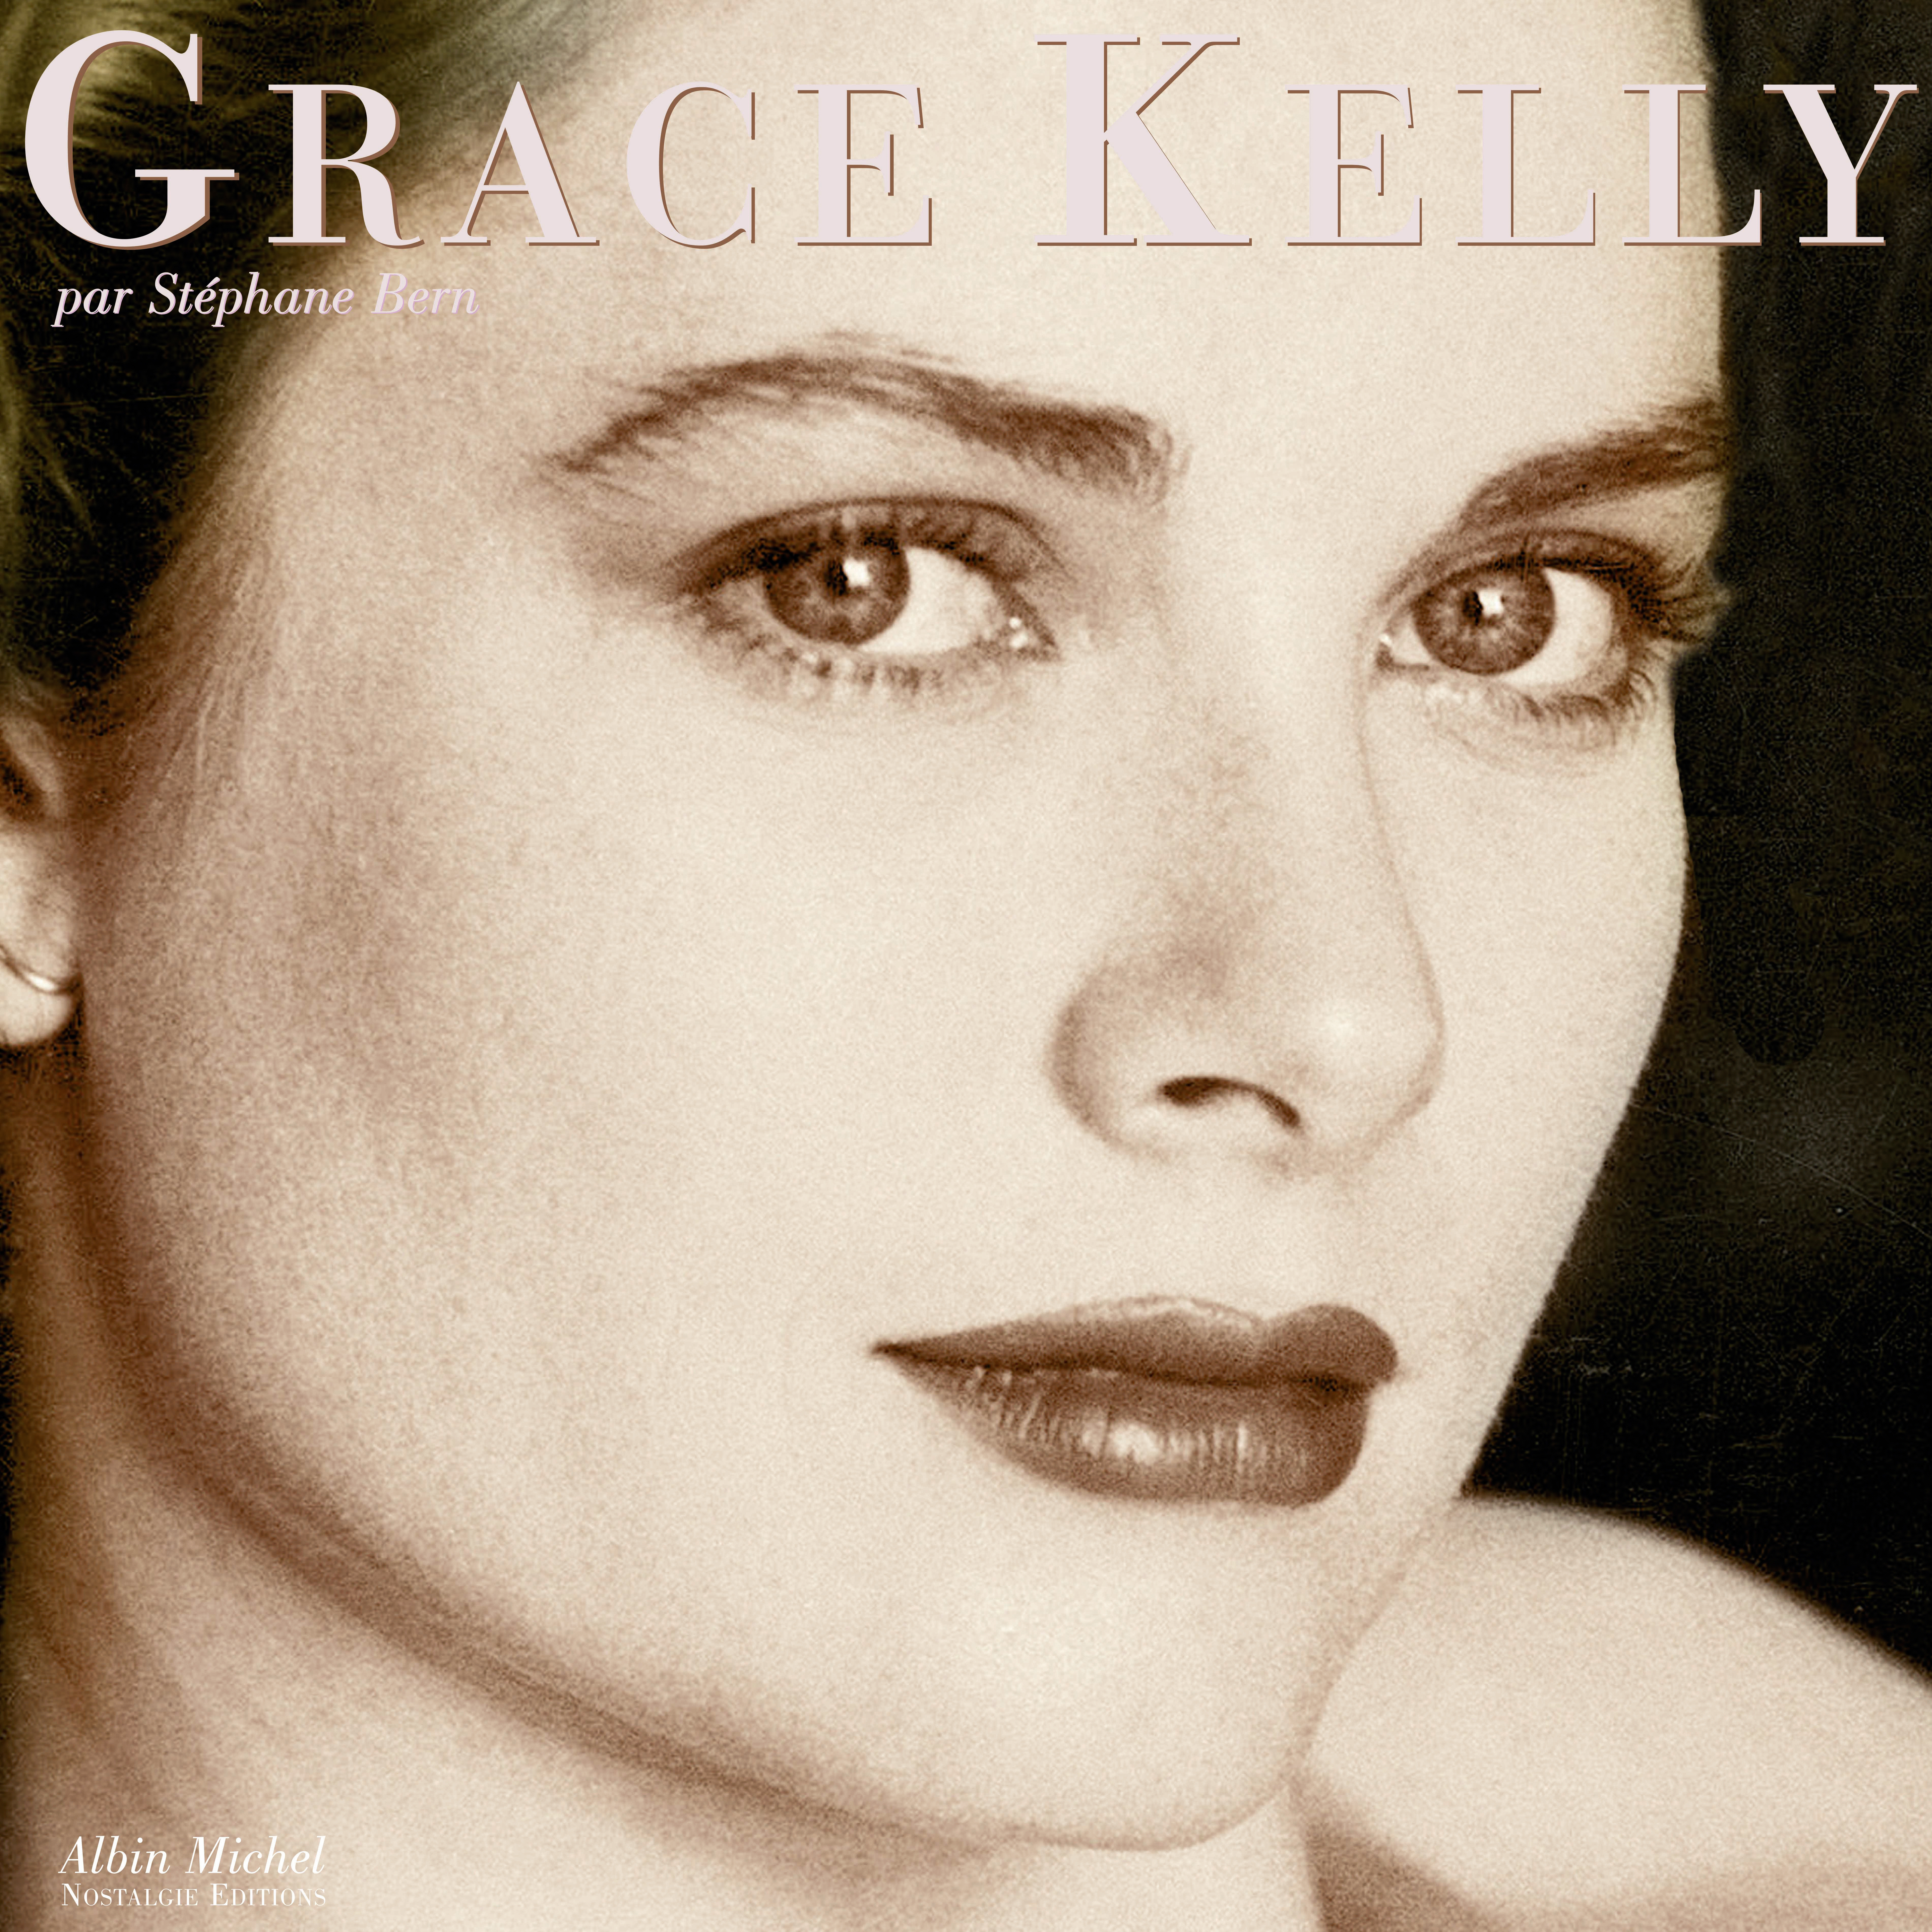 Couverture du livre Grace Kelly